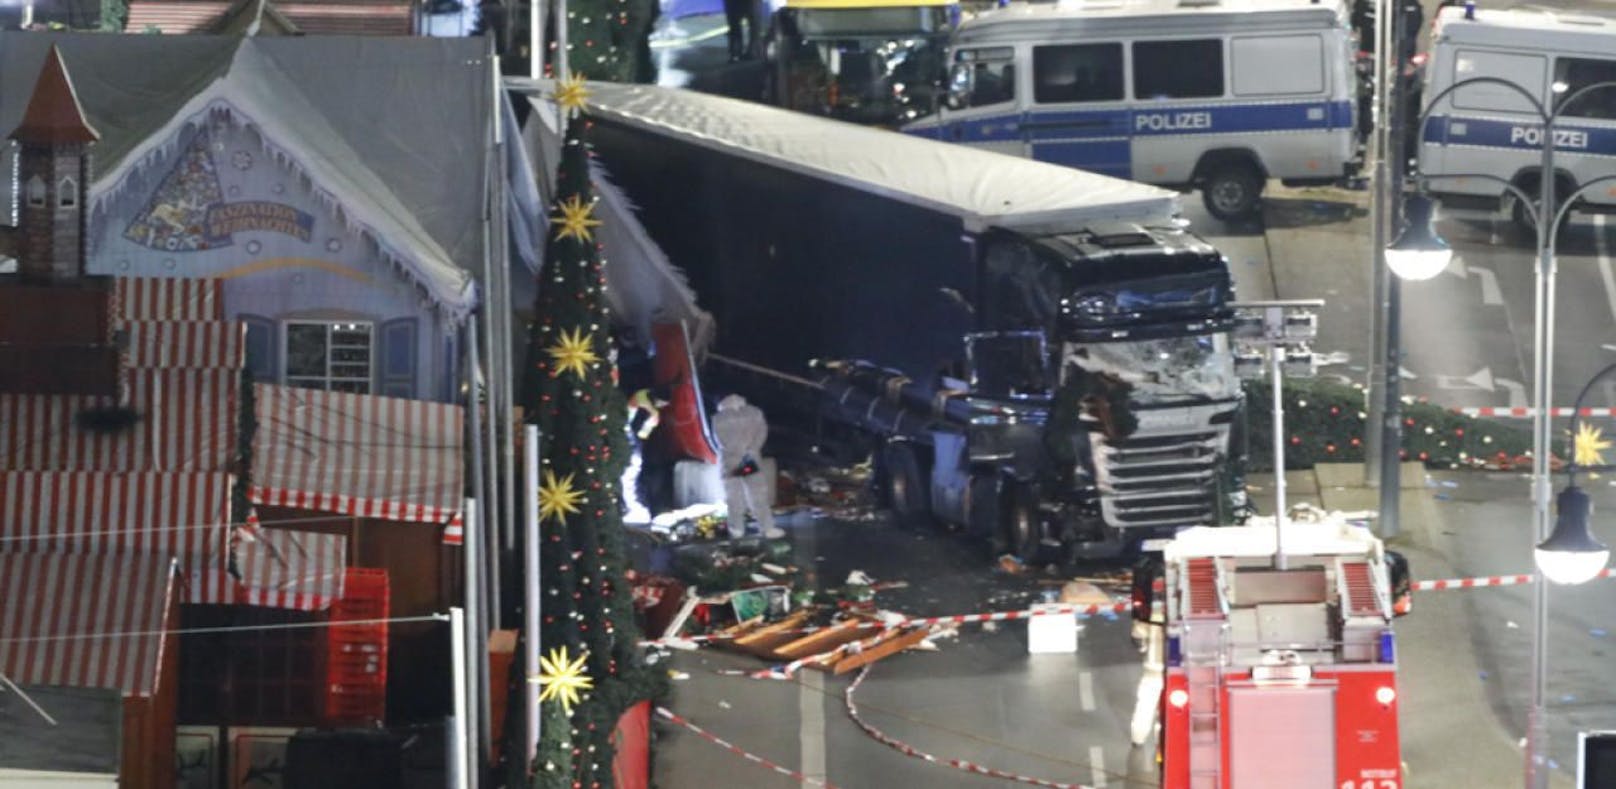 19. Dezember 2016: Der Tunesier Anis Amri verübte einen Anschlag auf einen Berliner Weihnachtsmarkt. Er rast durch die Menschenmenge, tötet zwölf Menschen und verletzt 48 Verletzte weitere. Er selbst wird später in Mailand erschossen.